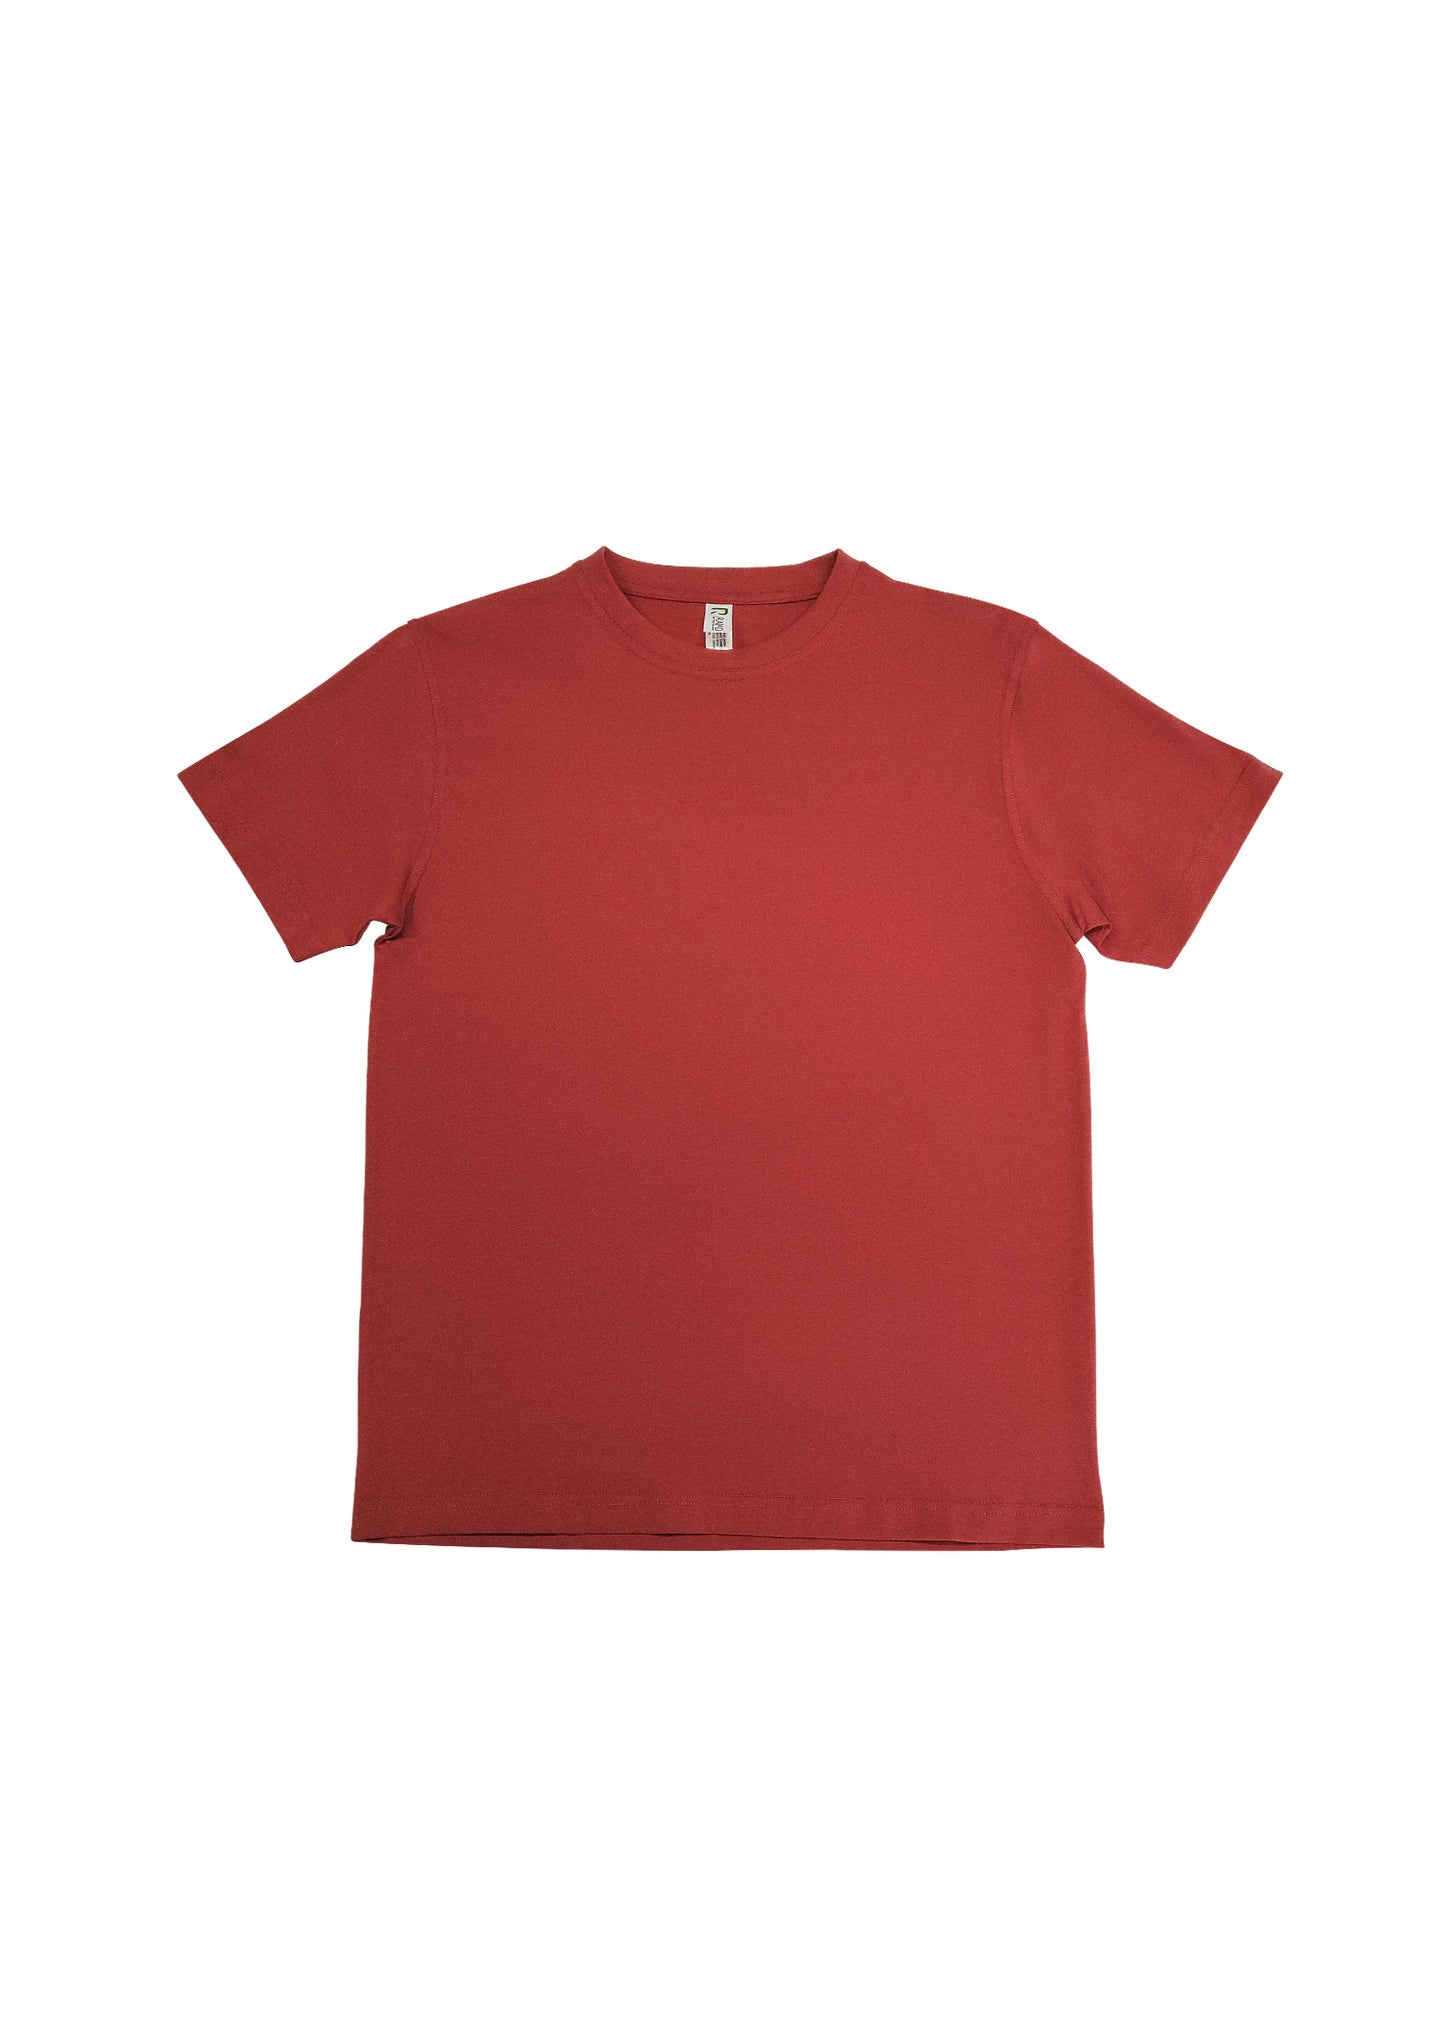 Unisex Modern Fit T-shirt 4XL - 5XL